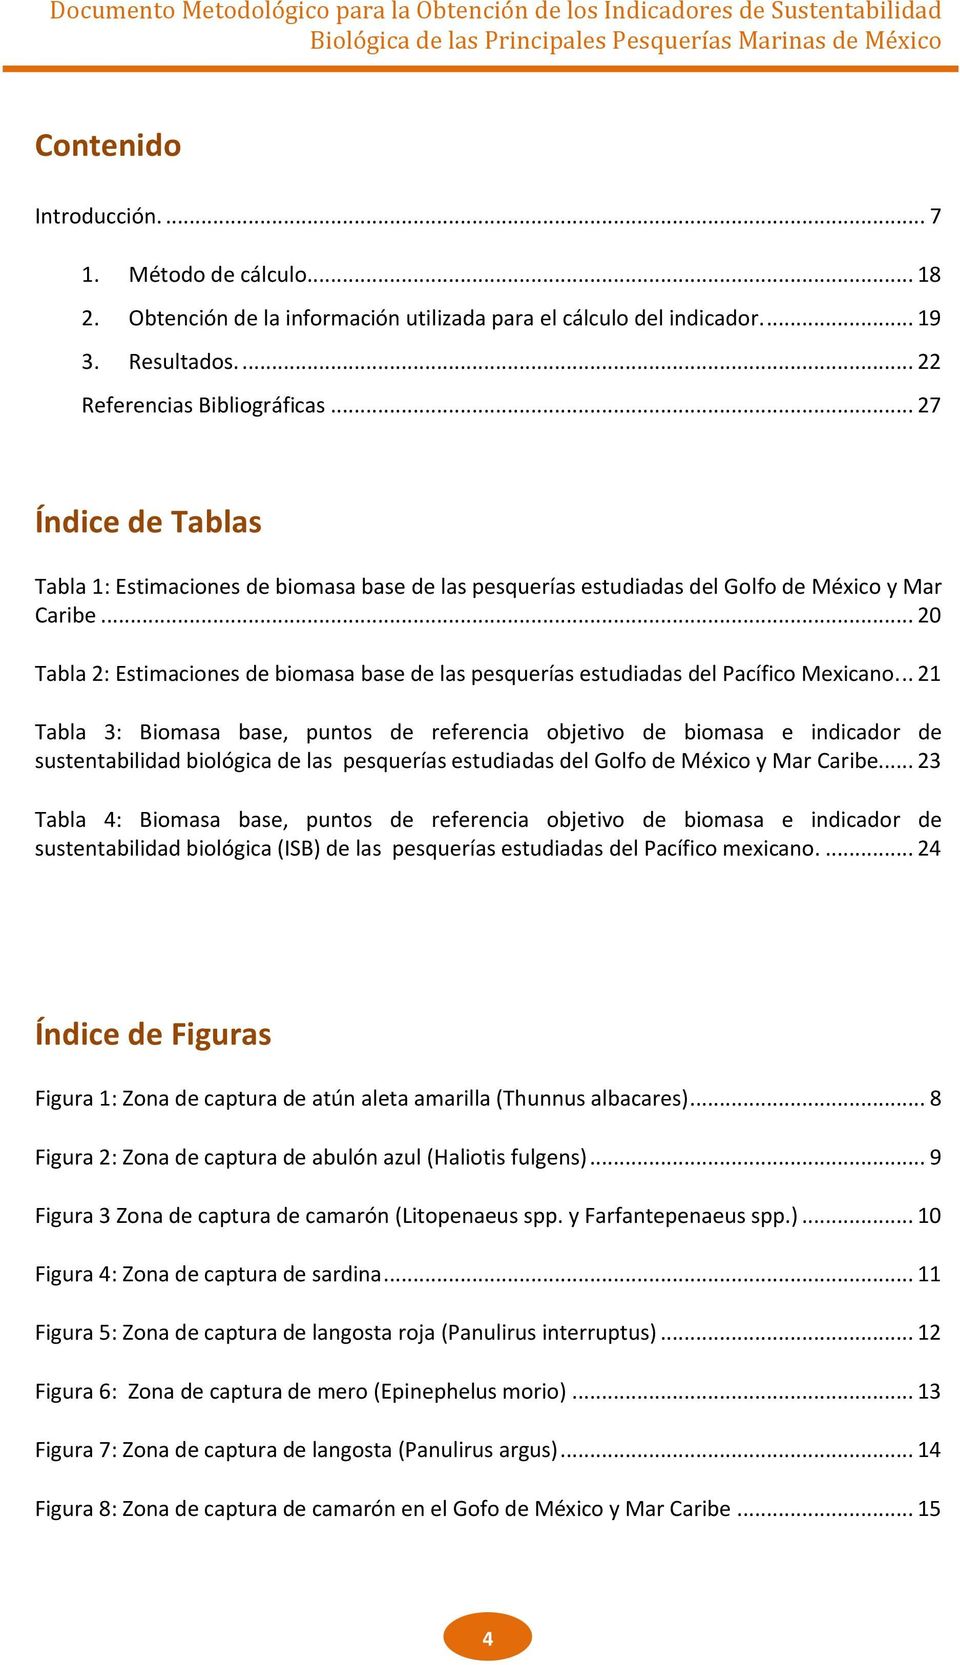 .. 20 Tabla 2: Estimaciones de biomasa base de las pesquerías estudiadas del Pacífico Mexicano.